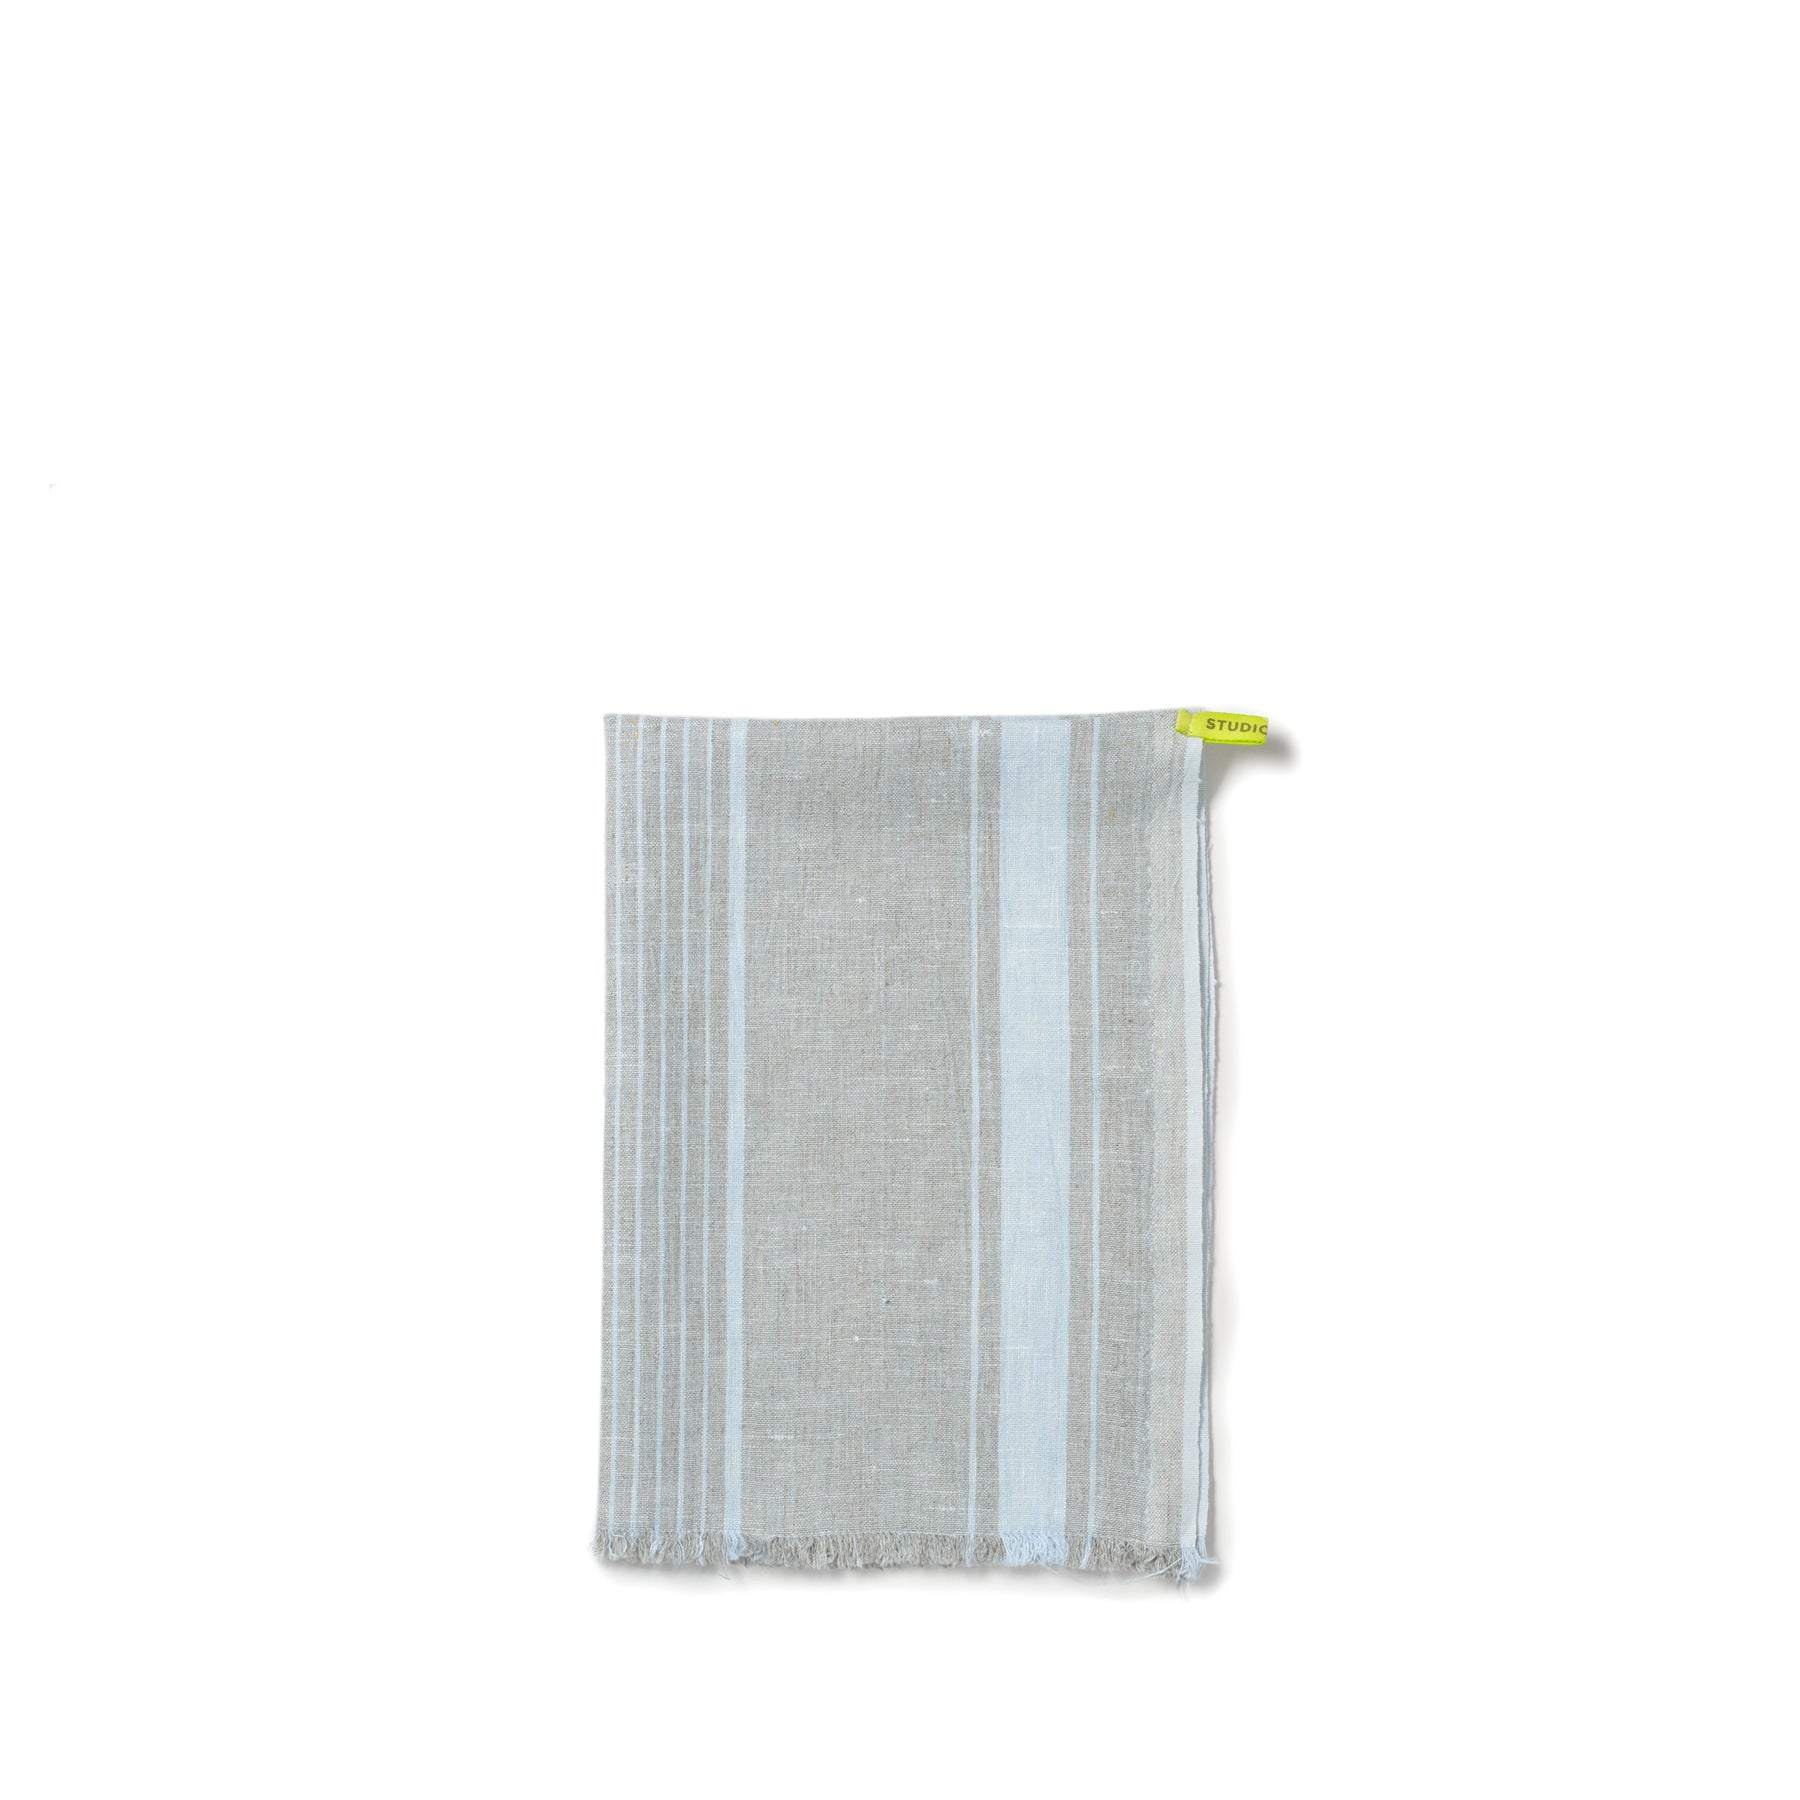 Linen Towel in Blue Zoom Image 1